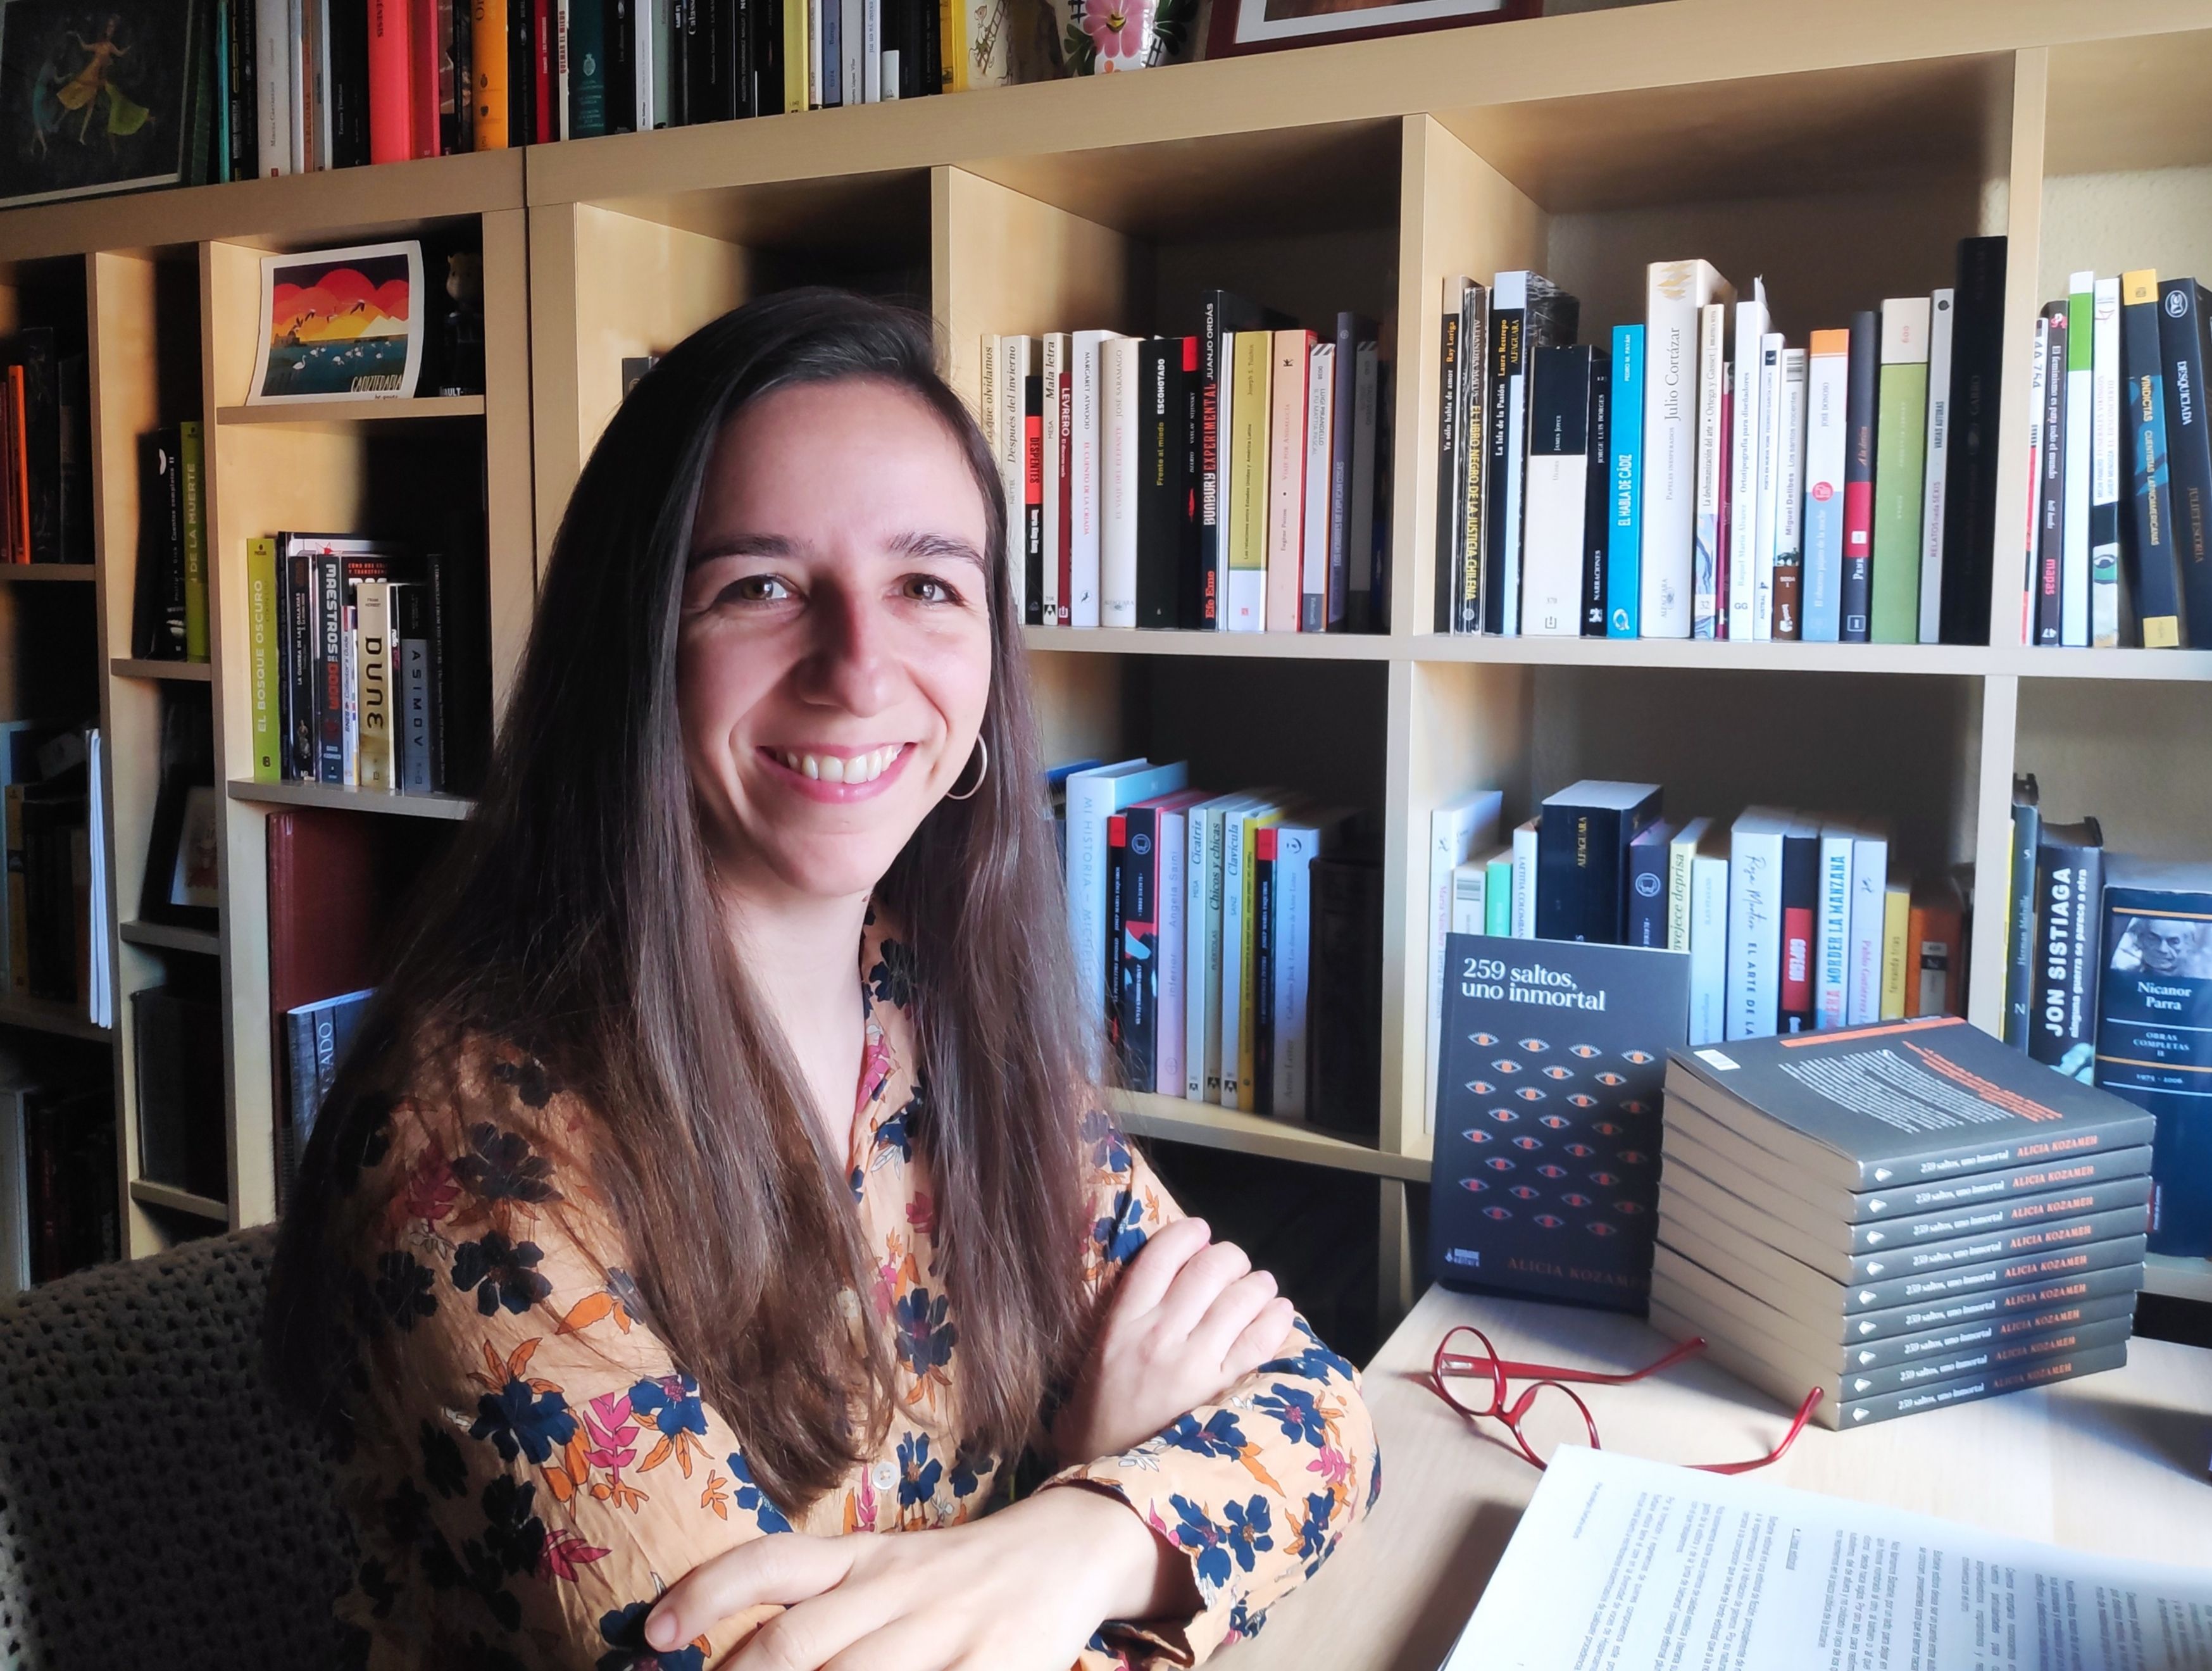 Una editorial de raíces jerezanas para rescatar a "mujeres olvidadas" y descubrir nuevas voces contemporáneas. En la imagen, Sonia López Baena, fundadora de Barbarie editora.